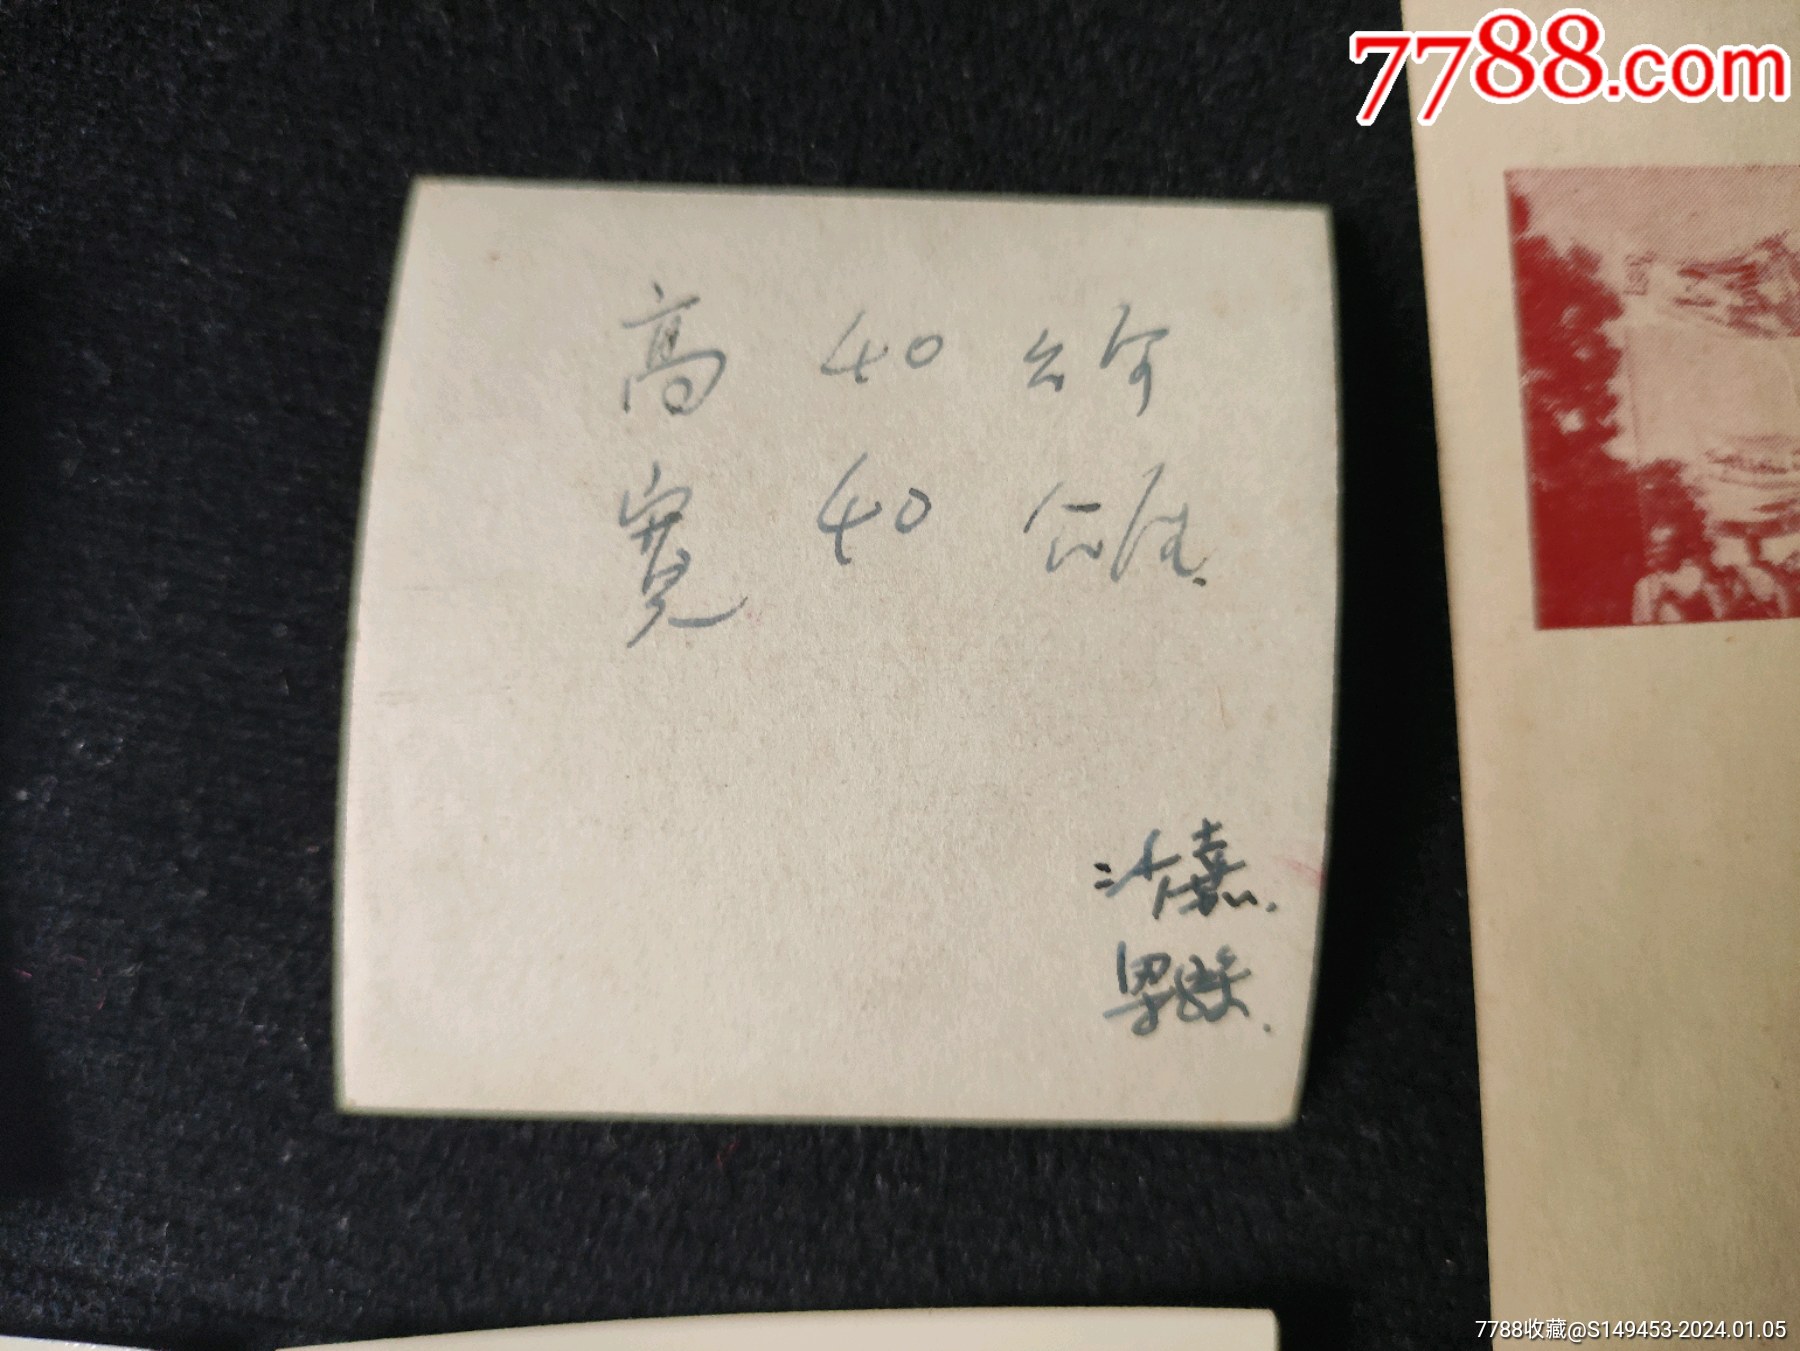 清華校慶46周年(1957)書簽設計原稿一組_價格355元_第9張_